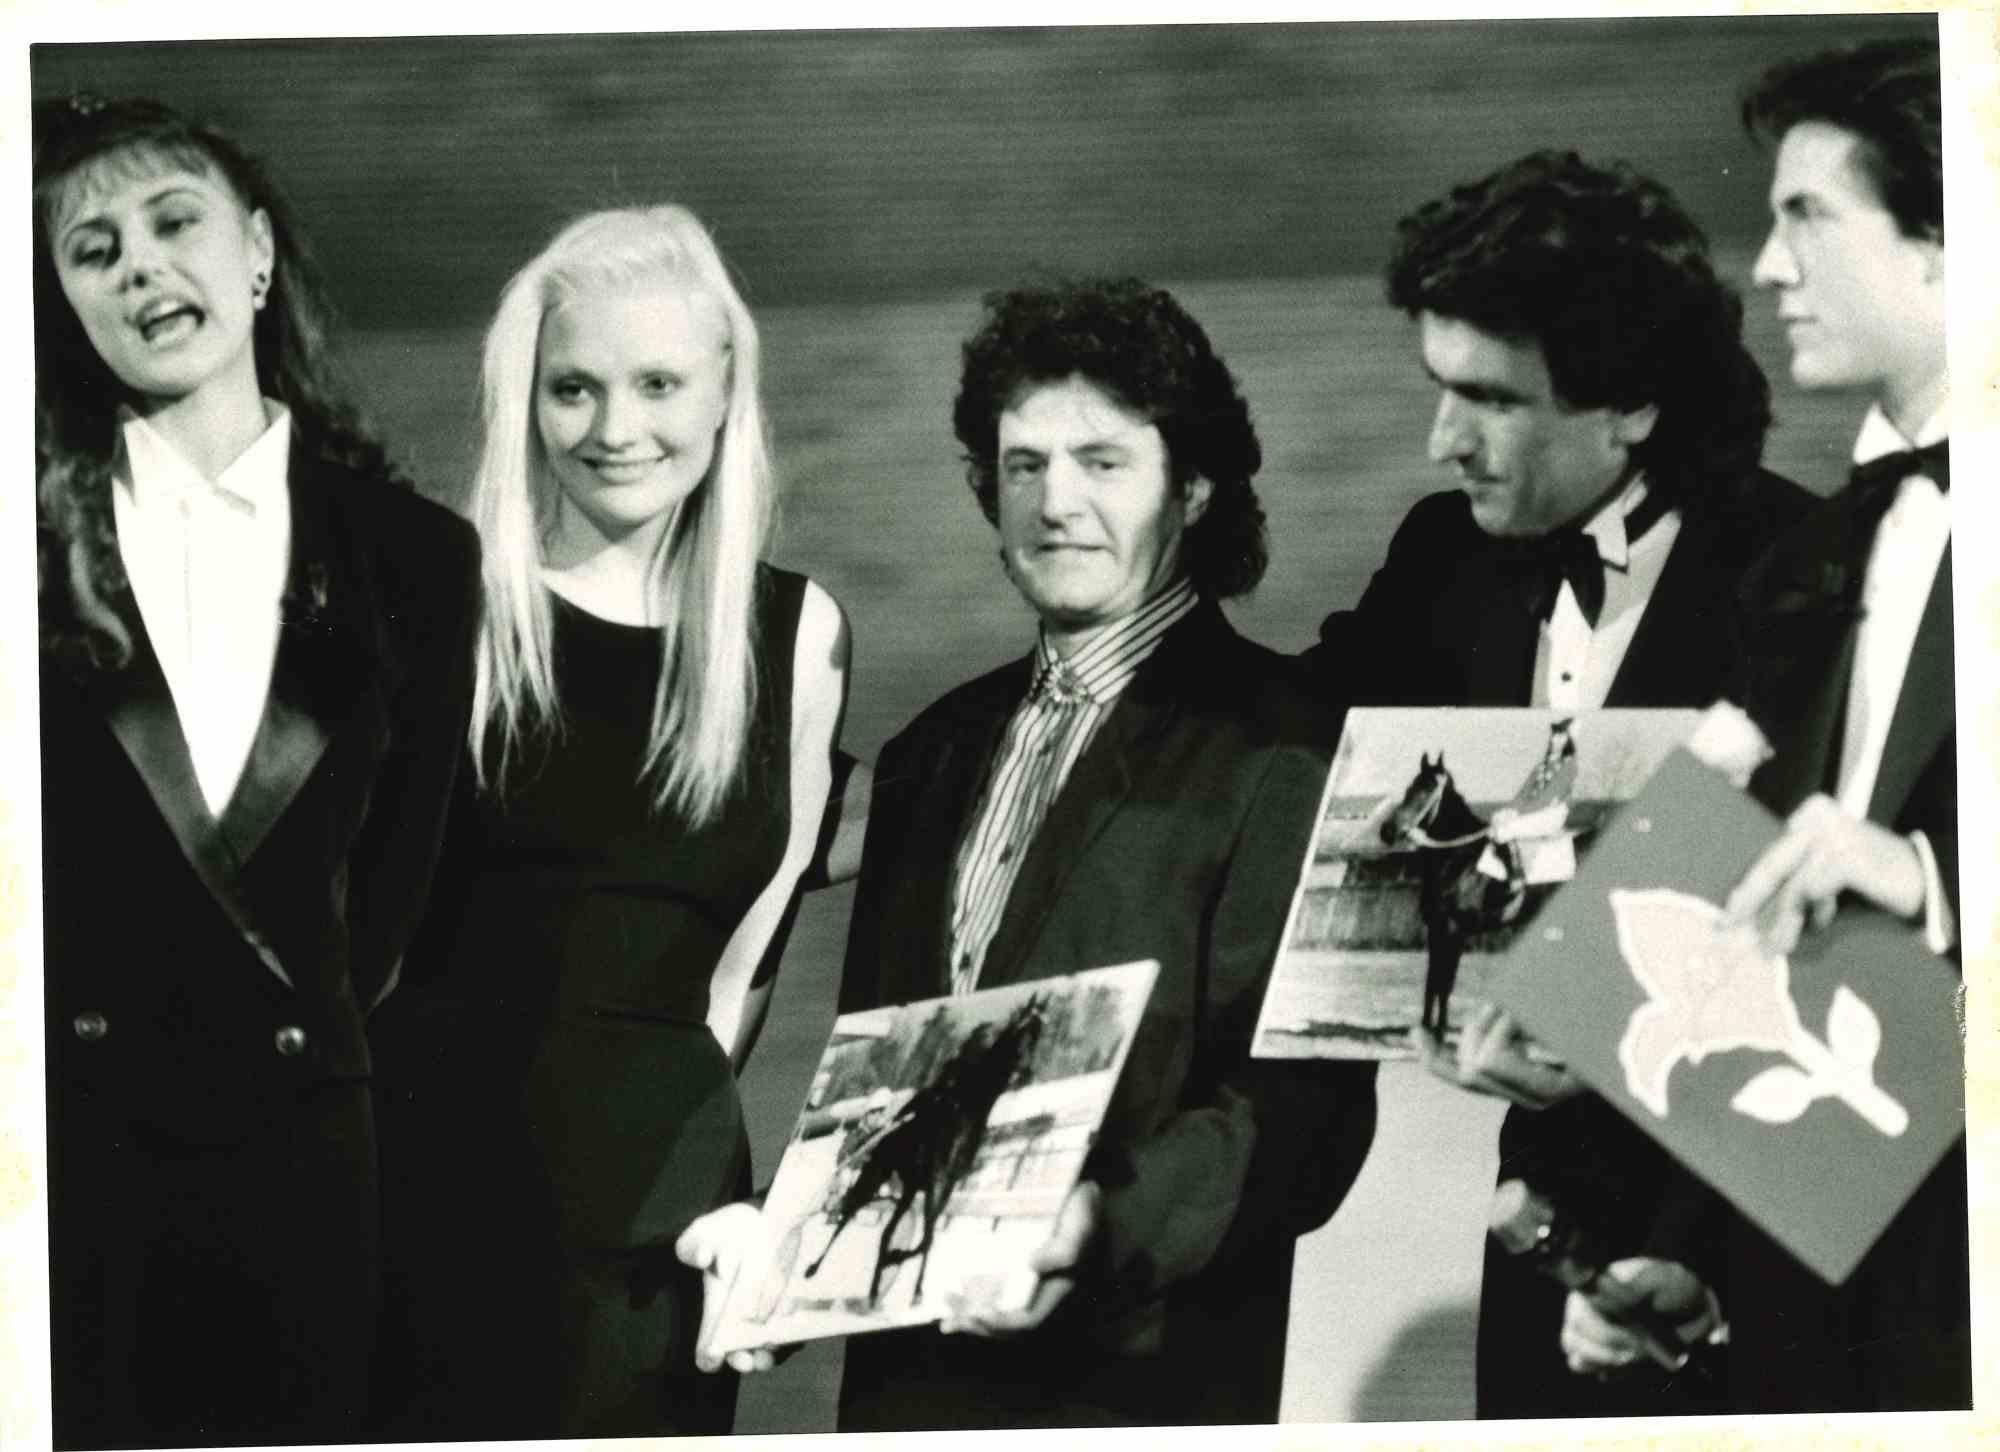 Unknown Portrait Photograph - Winner of Sanremo (Anna Oxa, Fausto Leali, Toto Cutugno) -Photograph - 1980s